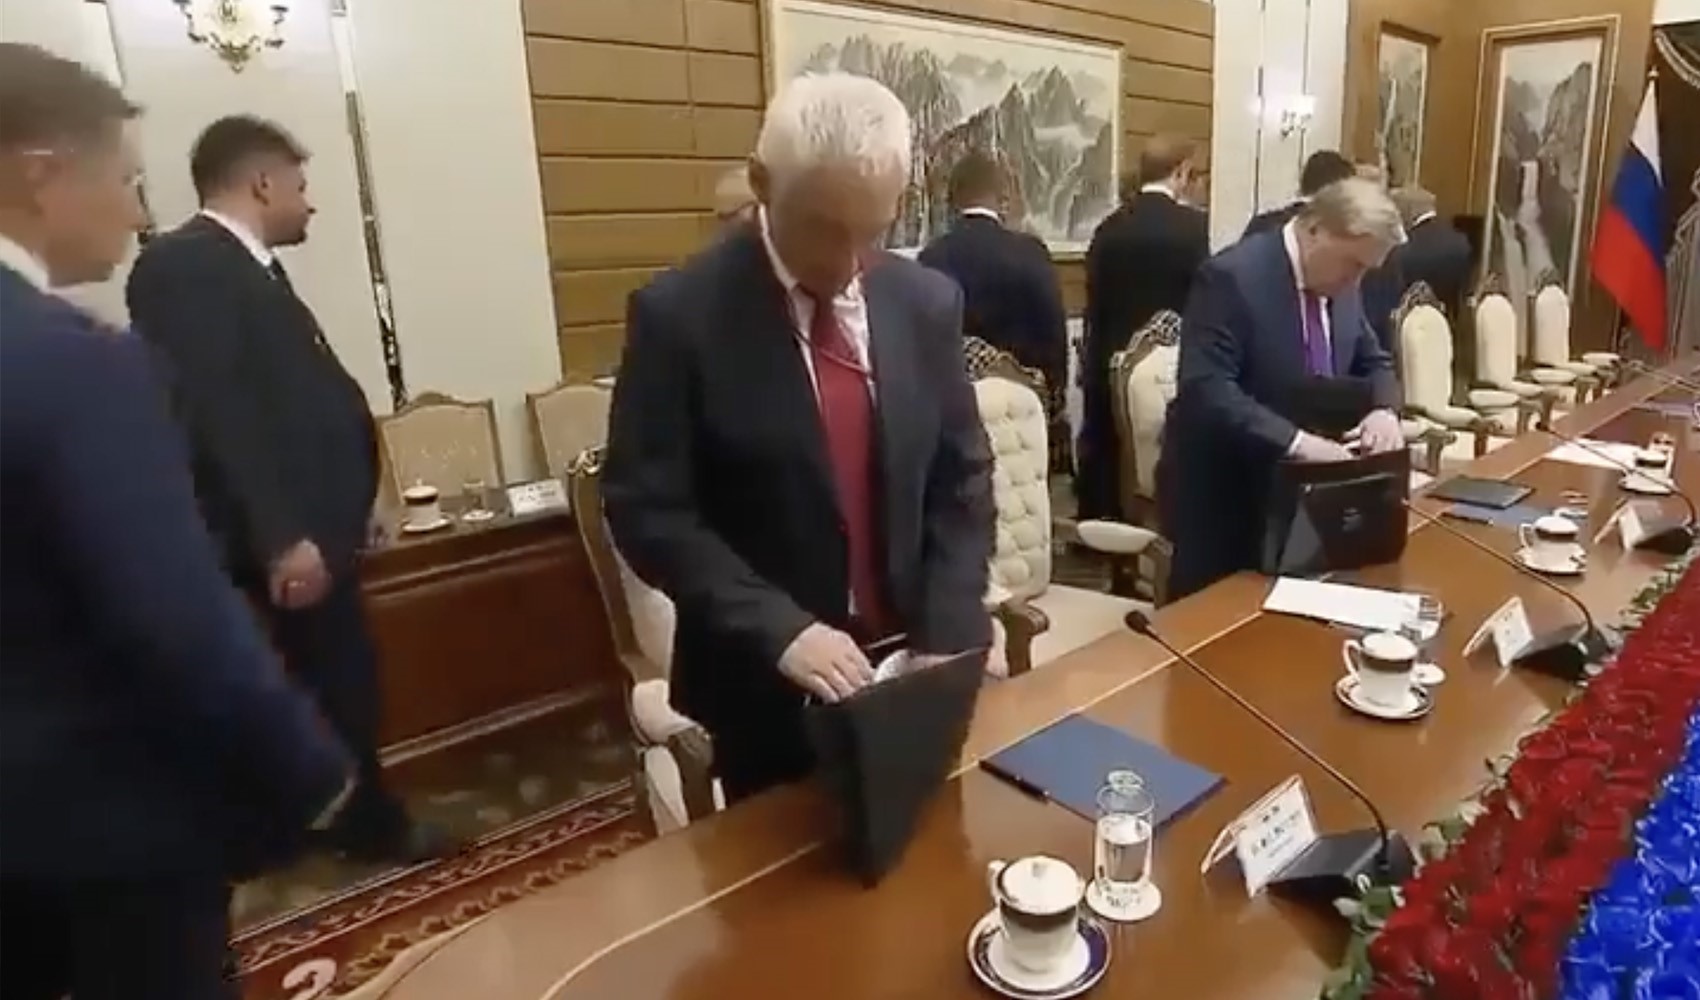 Putin, Kim Jong-Un görüşmesinde gerilim! Rus bakanlar salondan çıkarıldı...